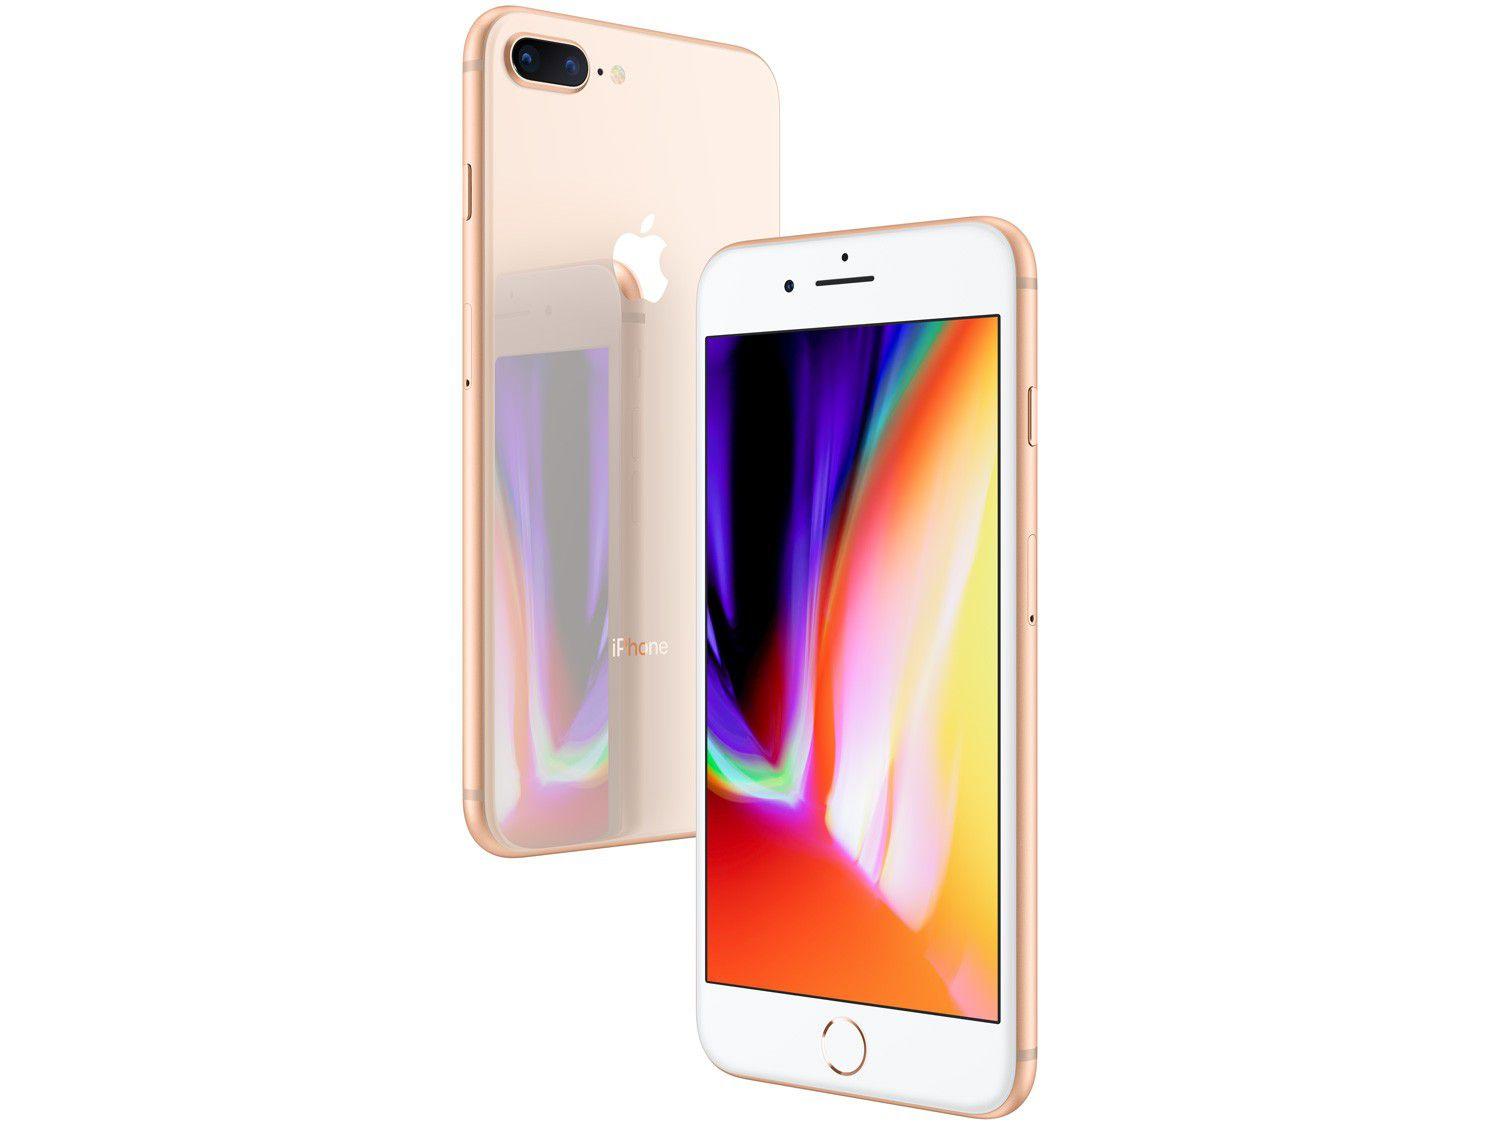 iPhone 8 Plus Apple 64GB Dourado 5,5” 12MP iOS iPhone 8 e 8 Plus